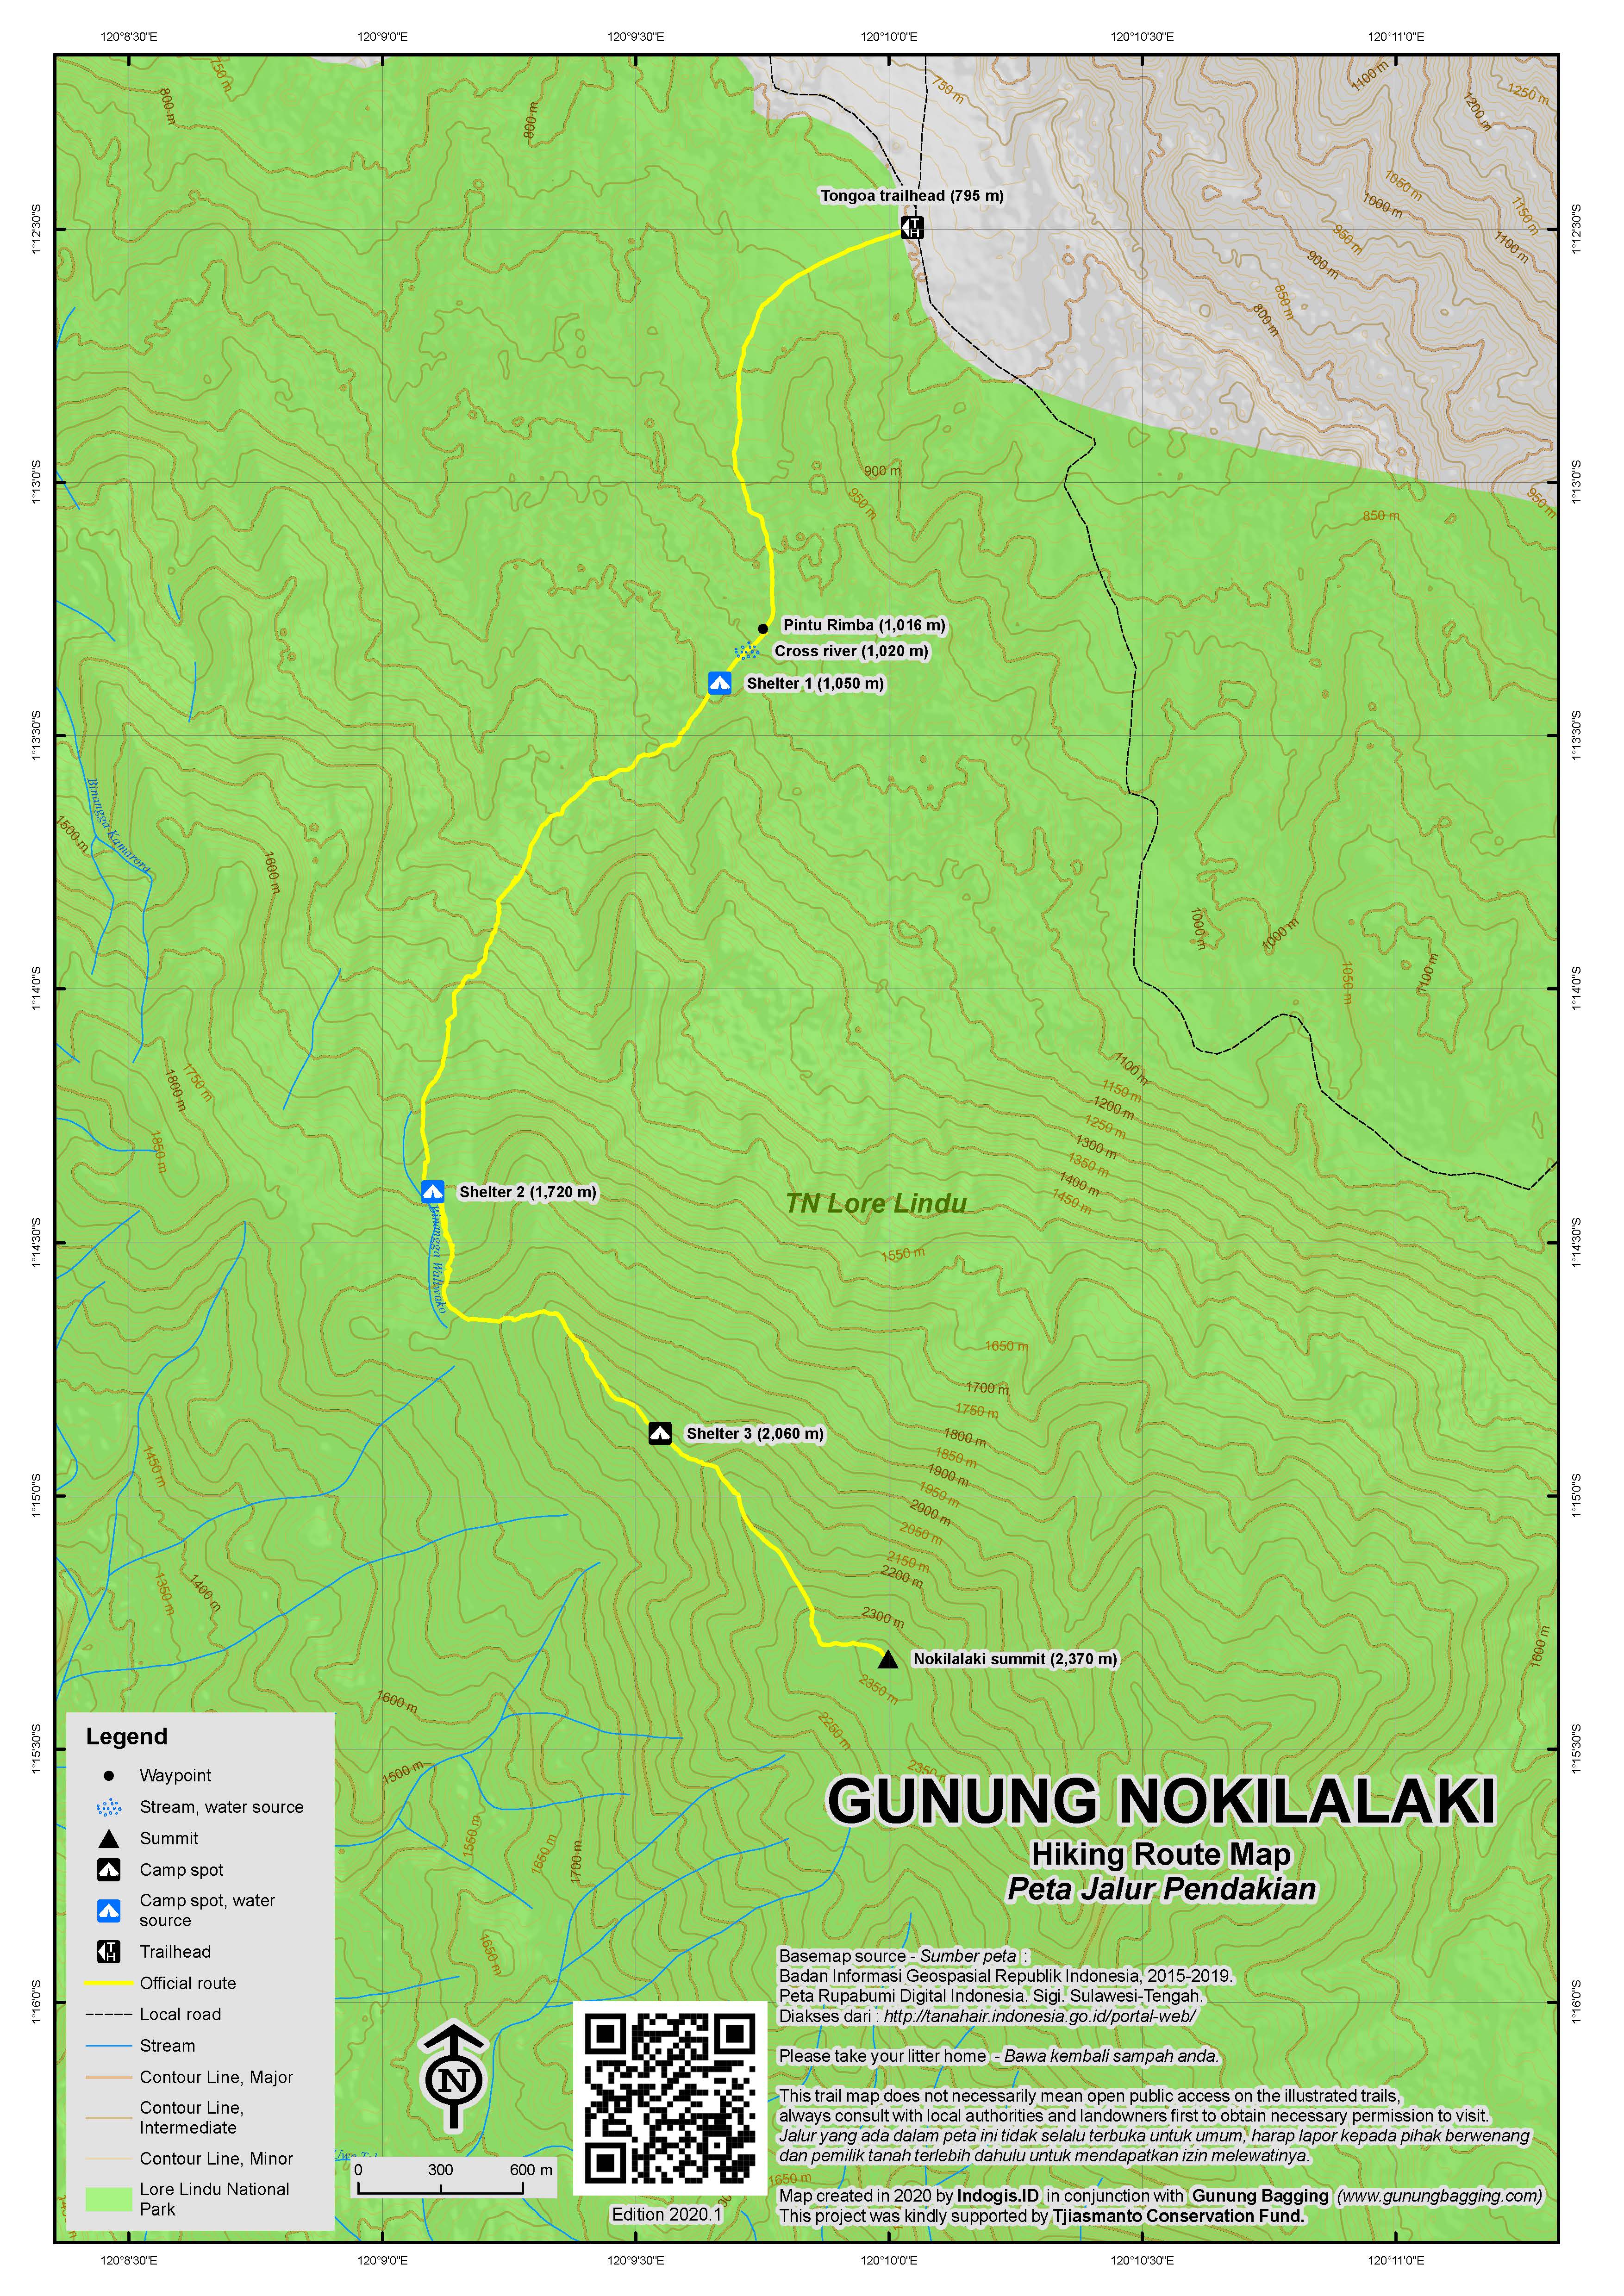 Peta Jalur Pendakian Gunung Nokilalaki